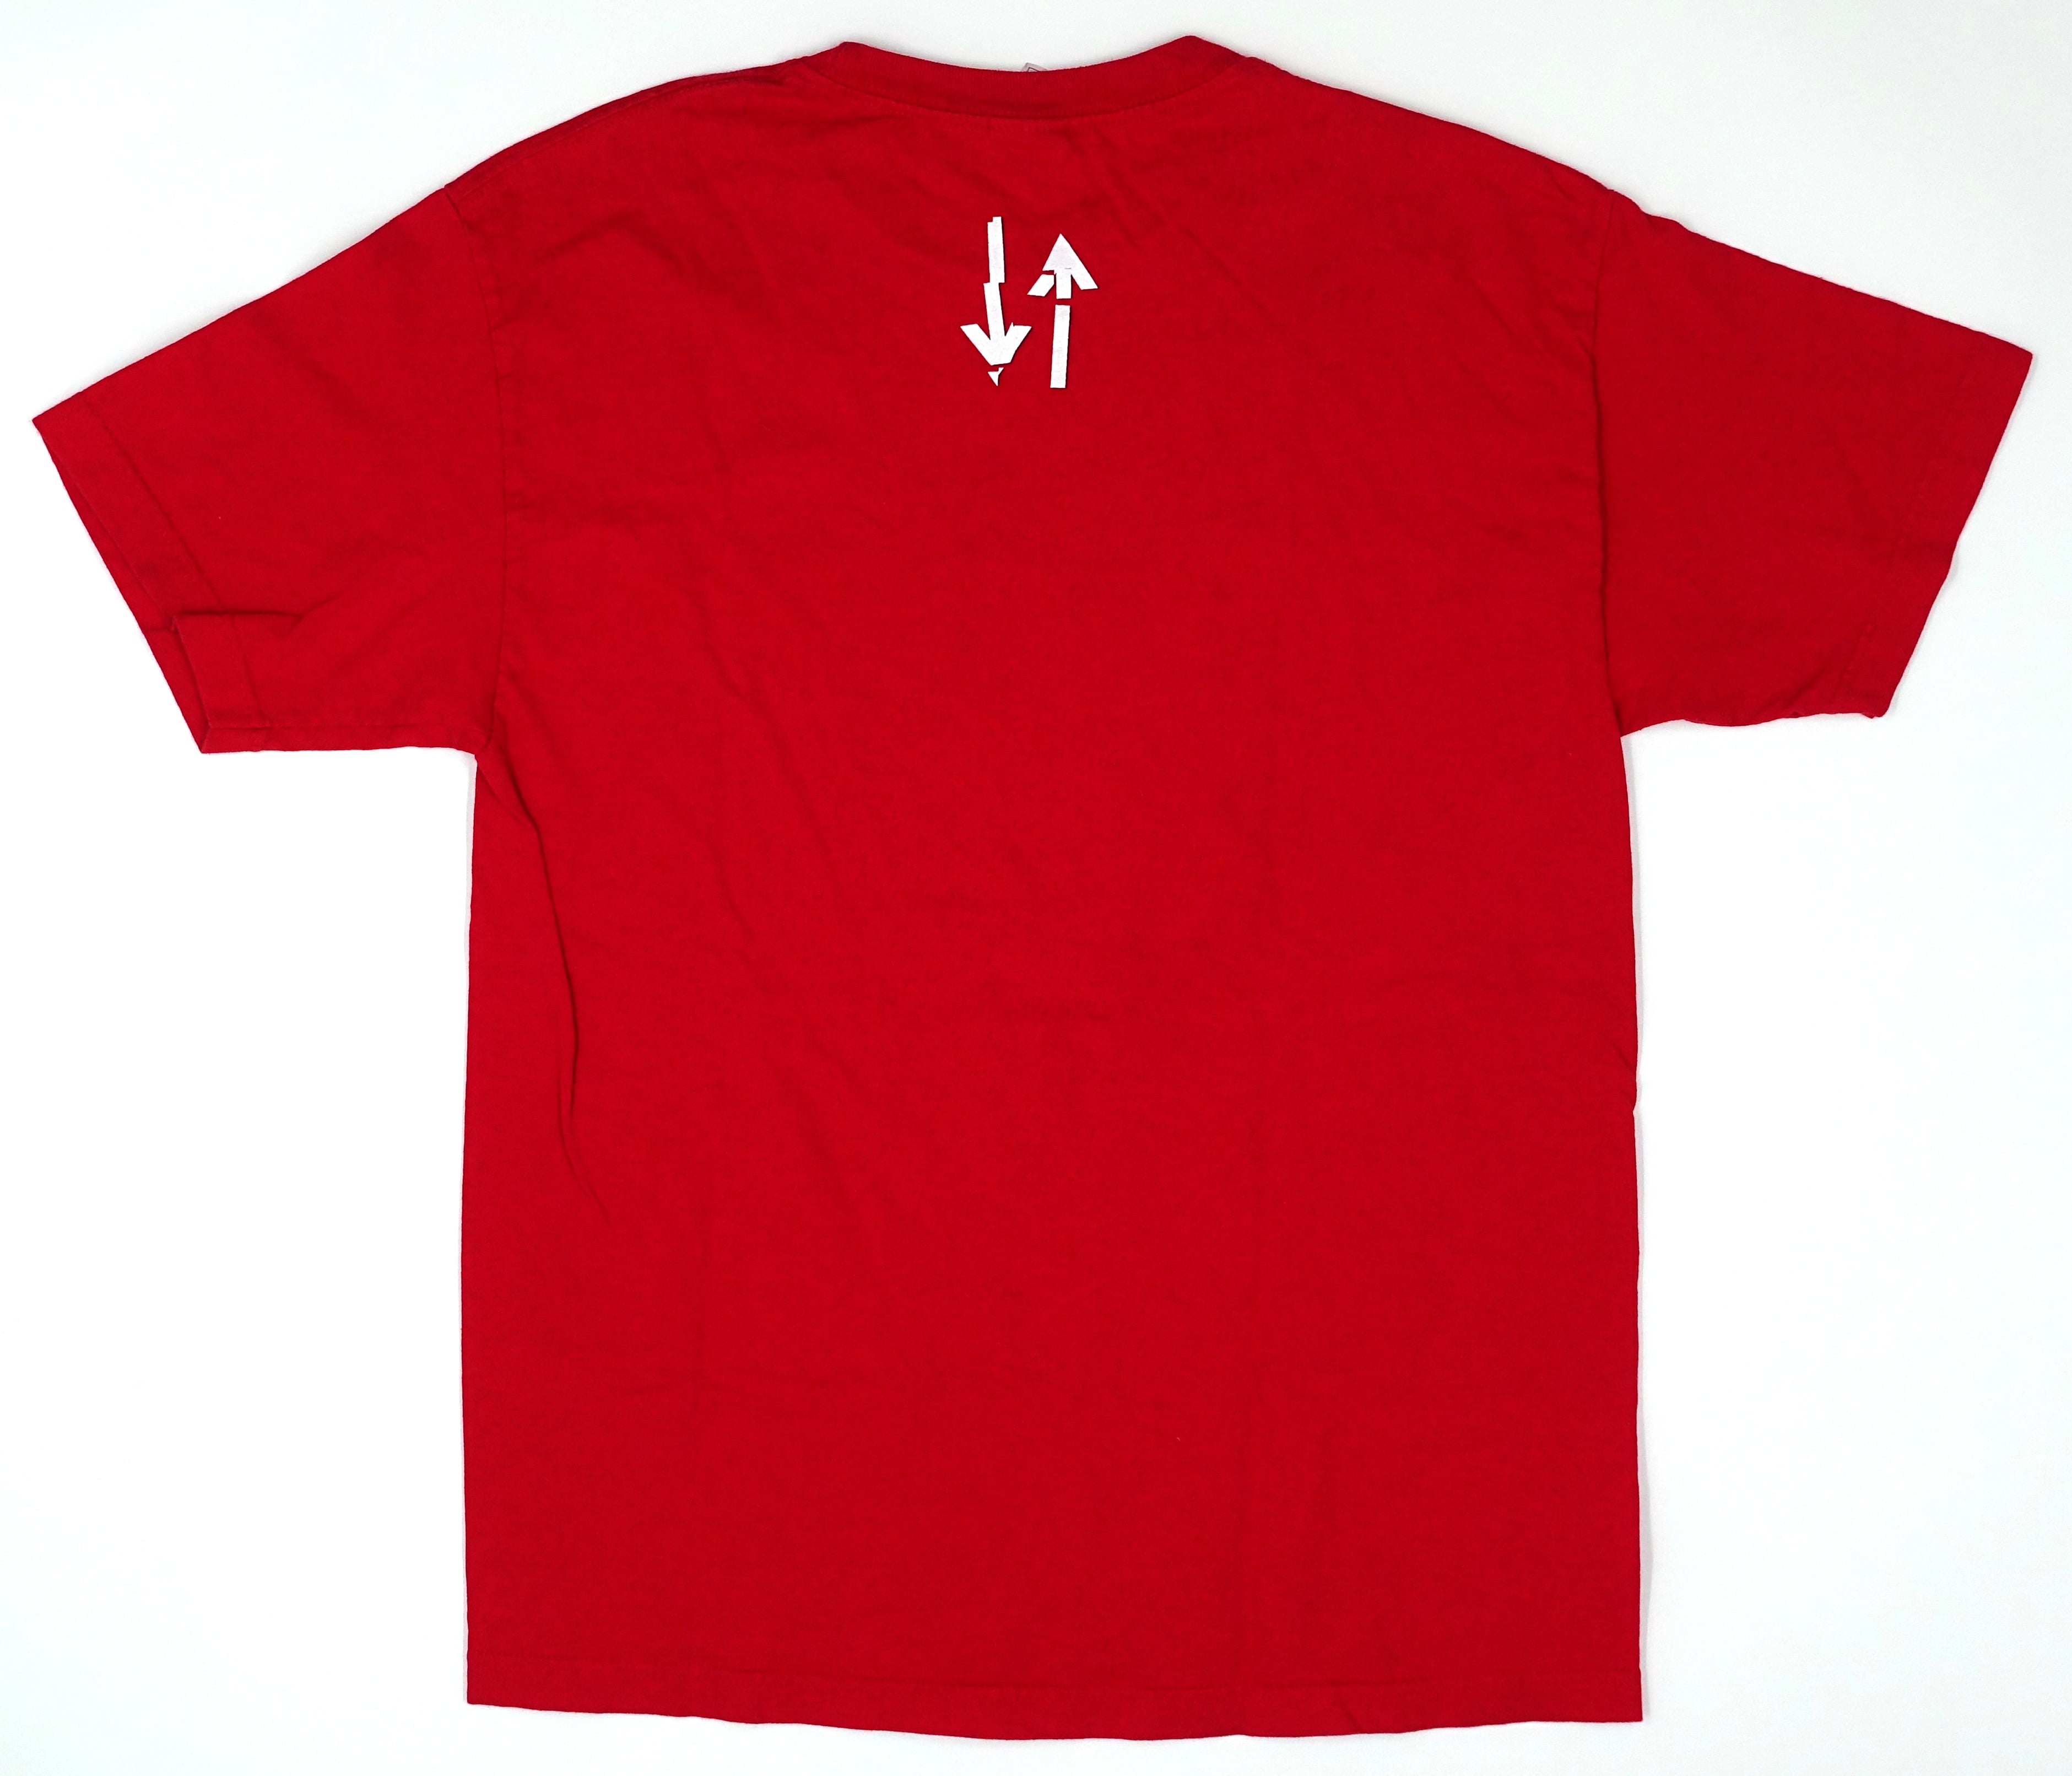 Hot Hot Heat - Elevator 2005 Tour Shirt Size Large